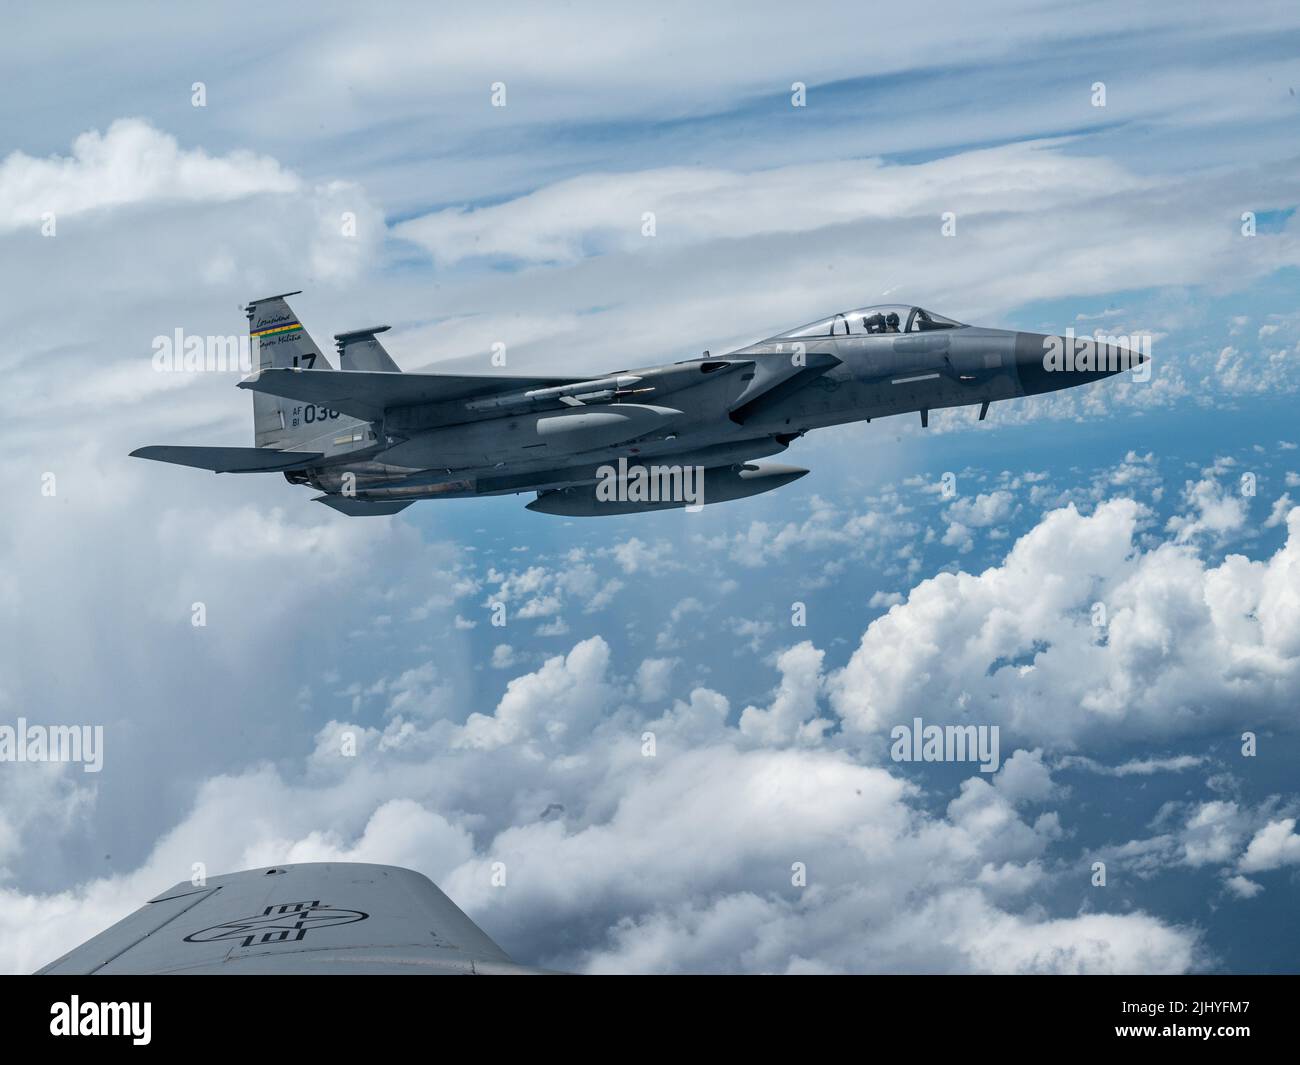 Un avión de combate Eagle F-15 de la Fuerza Aérea de los Estados Unidos, con el 159th Fighter Wing, se acerca a un avión Stratotanker KC-135R para repostar el 10 de julio de 2022 sobre el Golfo de México. Foto de stock